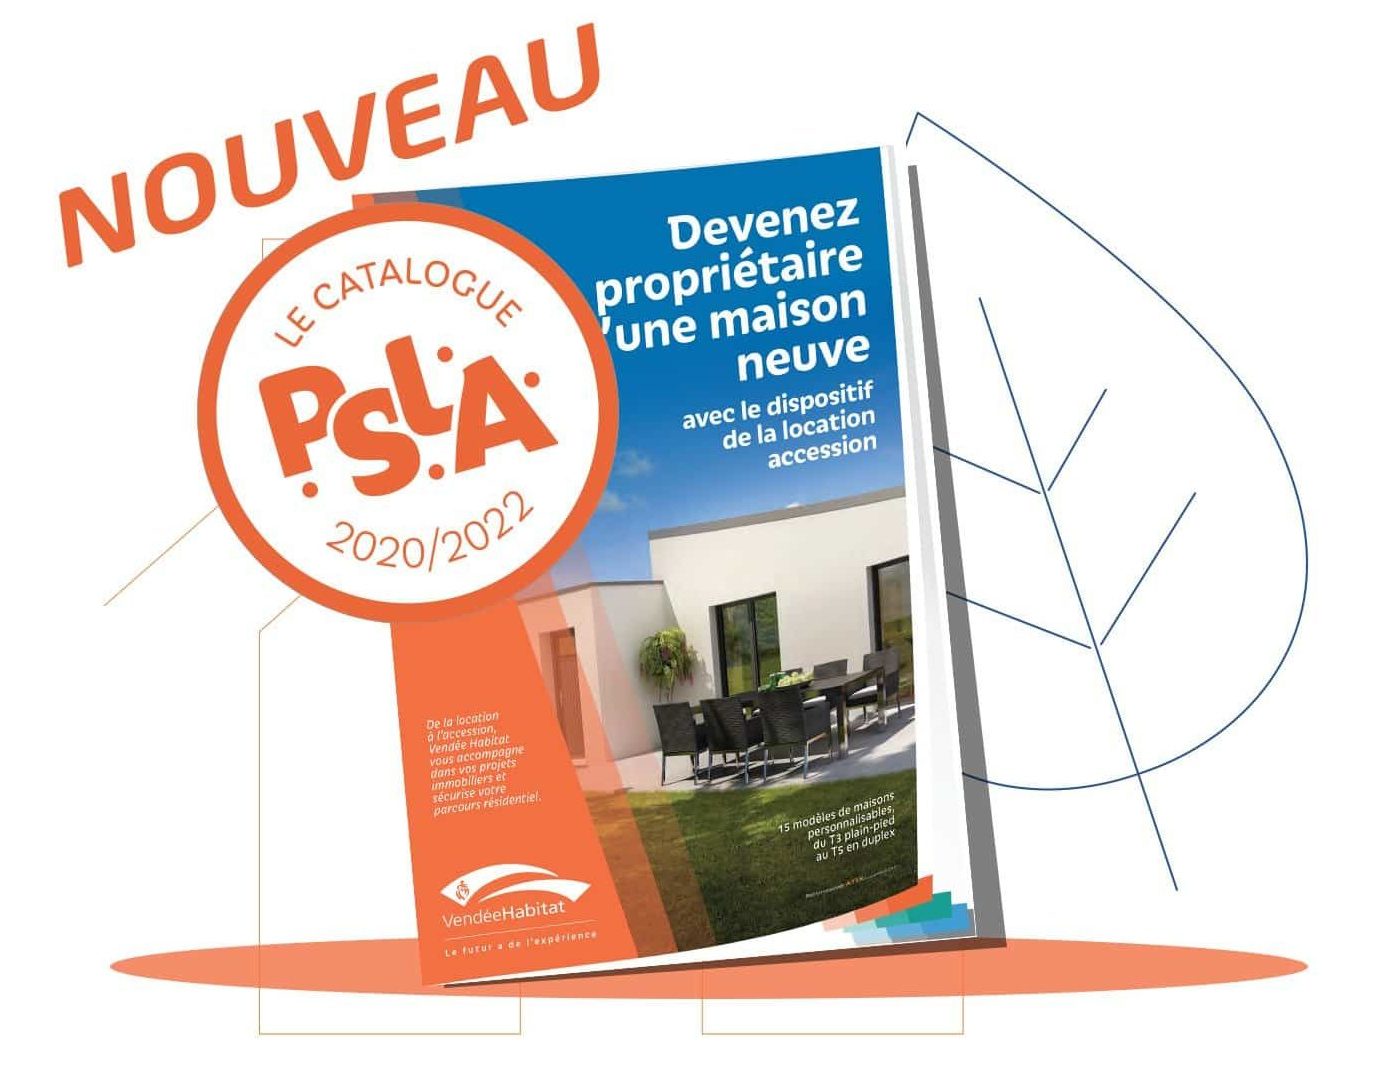 Nouveau PSLA catalogue de maisons en accession 2020-2022 - Vendée Habitat